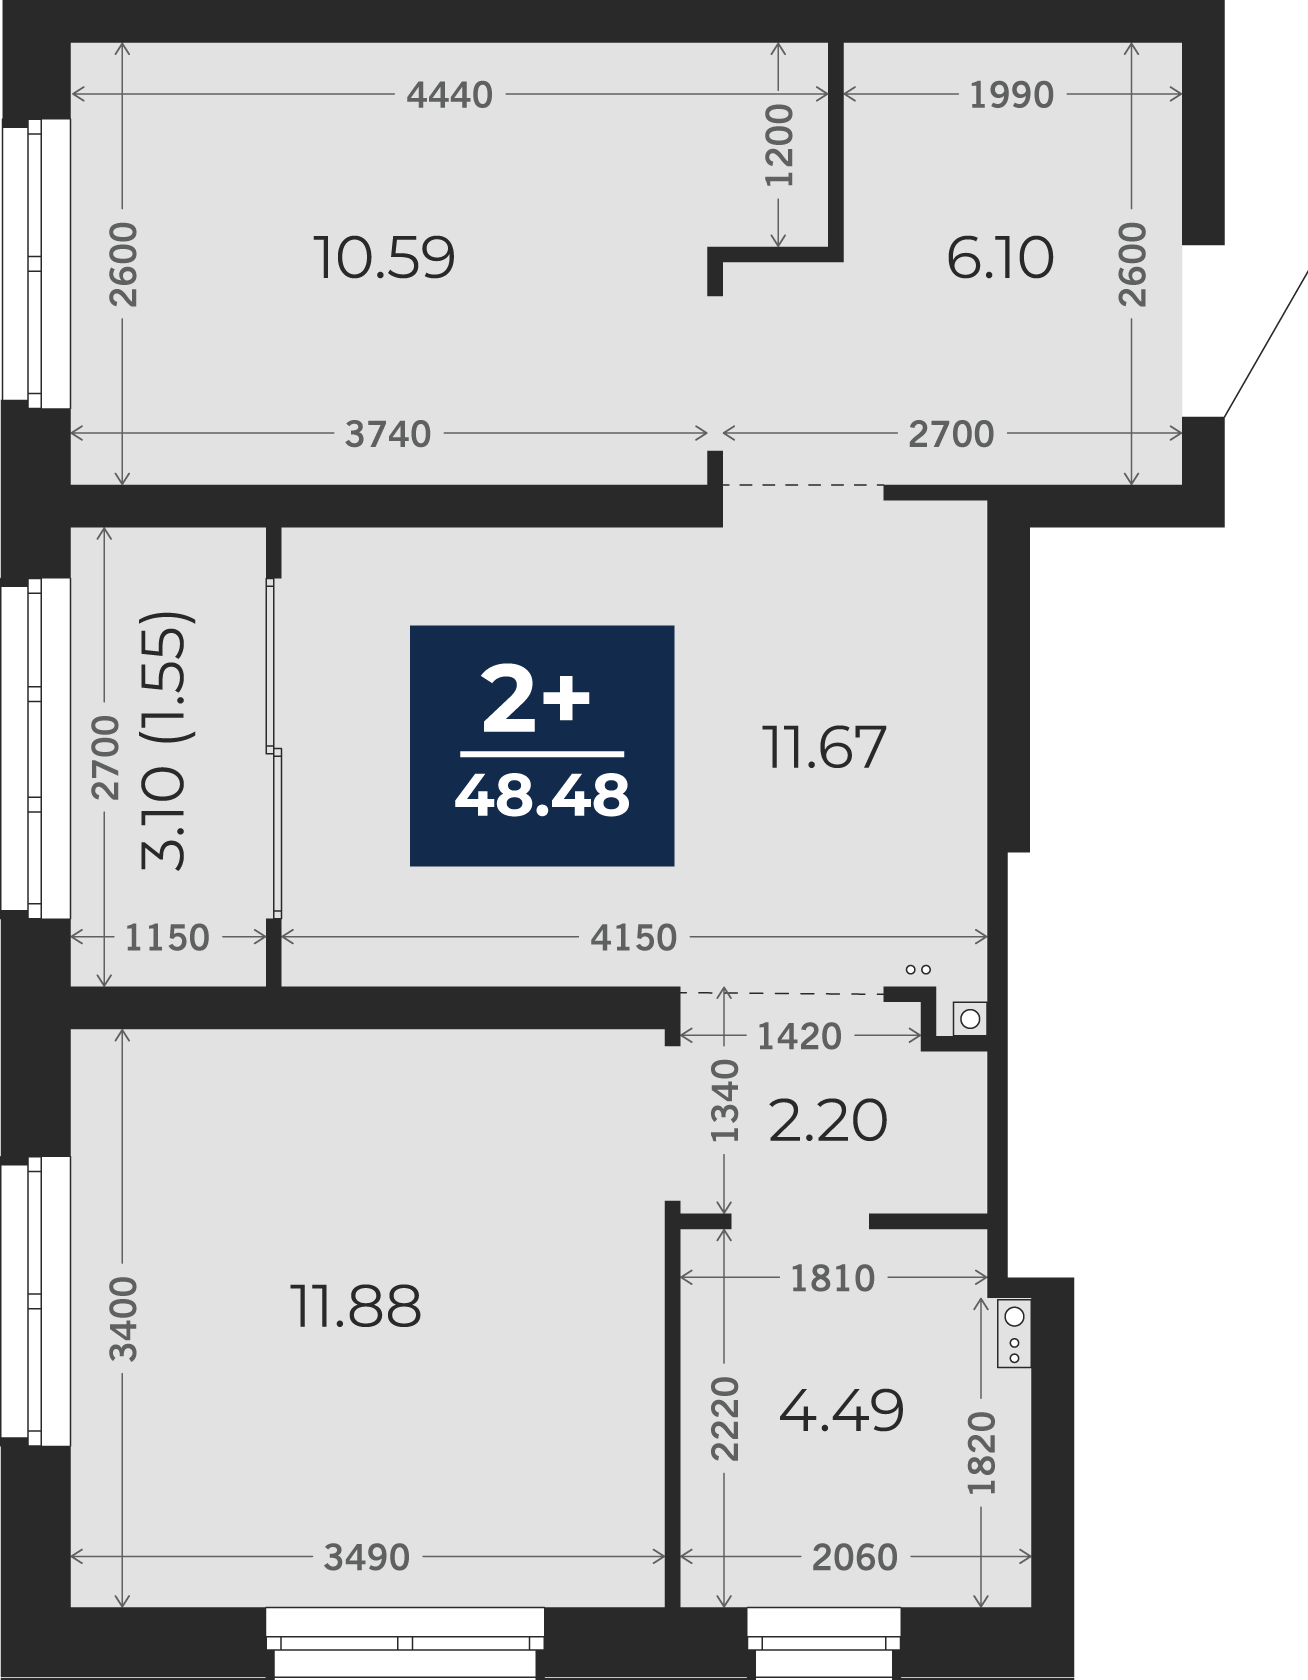 Квартира № 95, 2-комнатная, 48.48 кв. м, 10 этаж